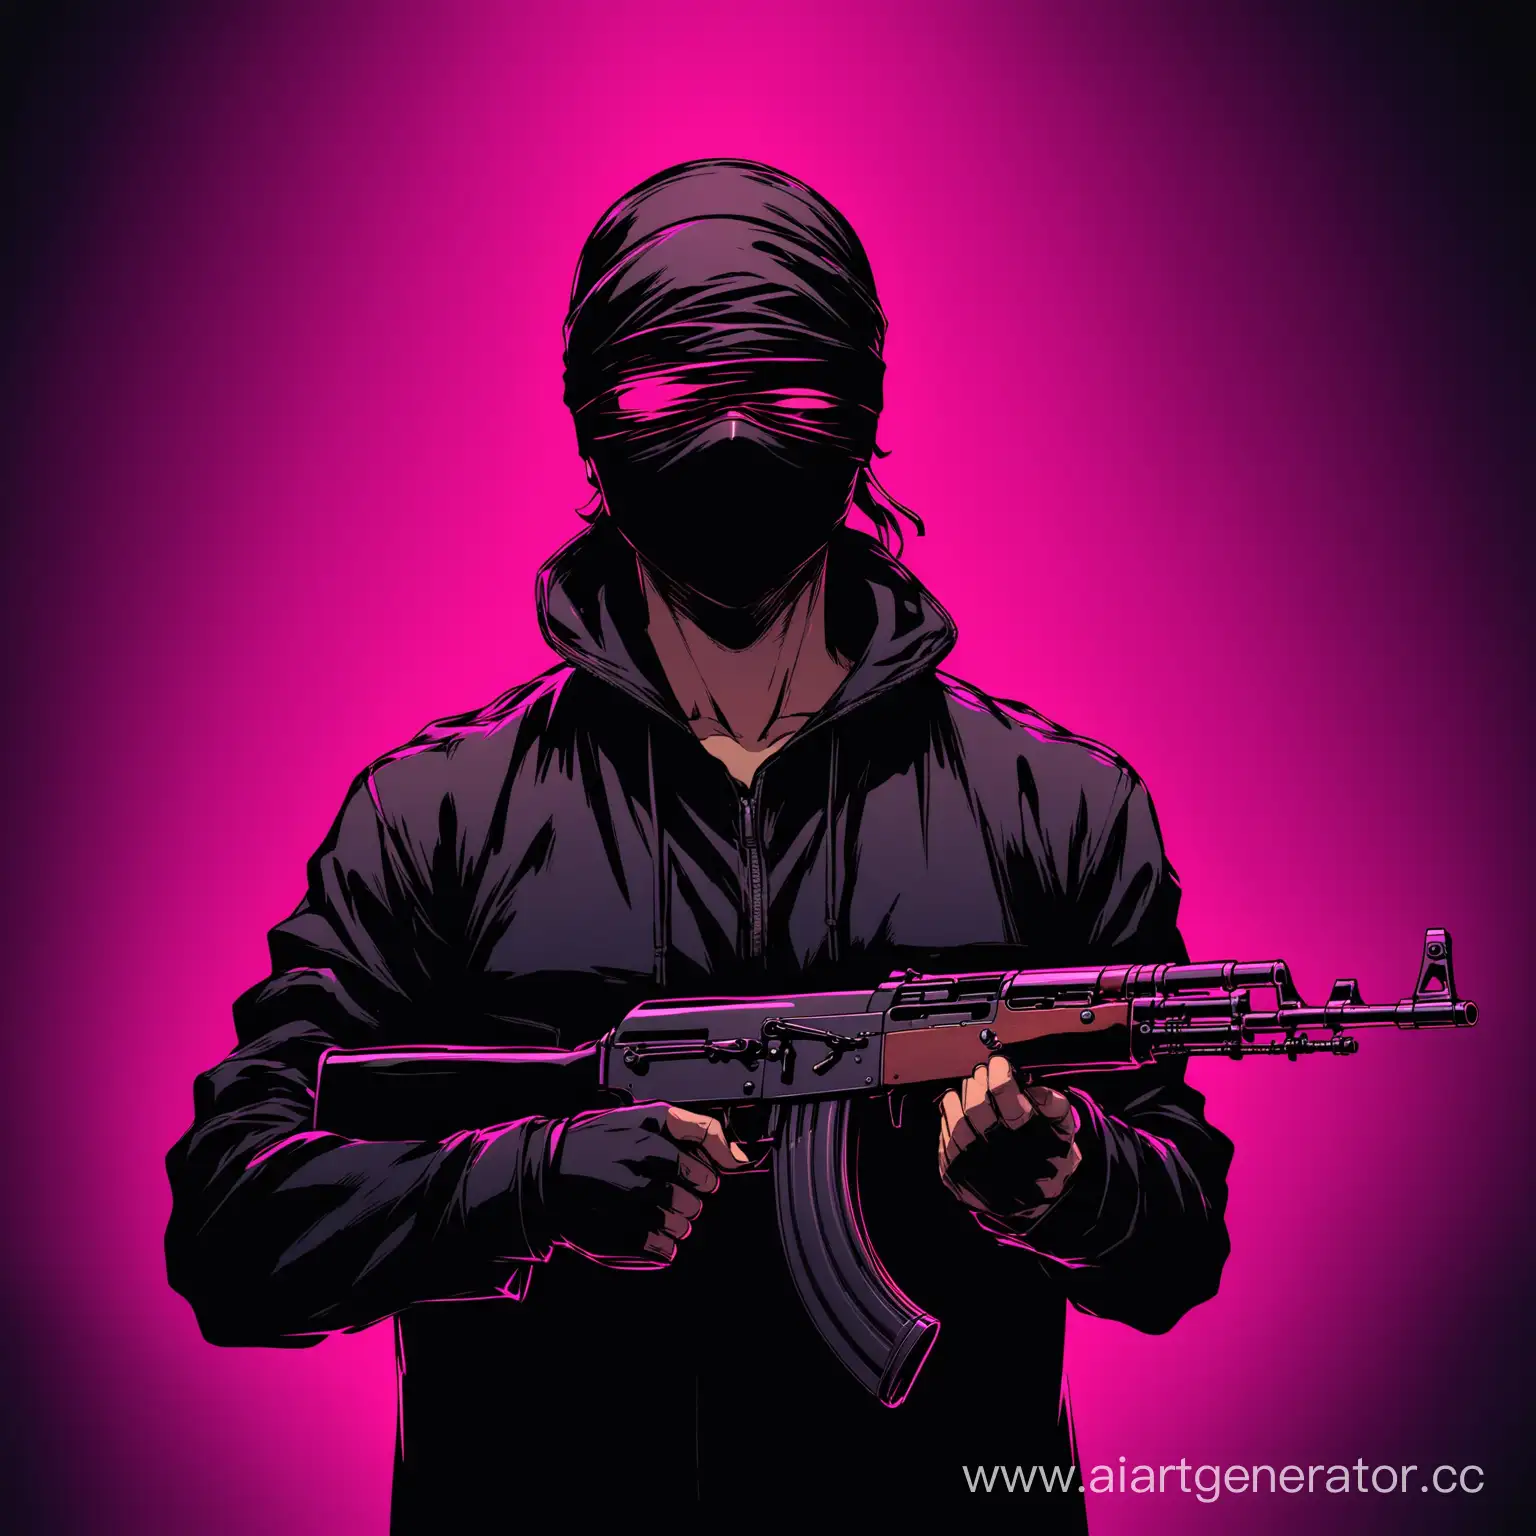 Мужчина с завязанными глазами,в руках АК-47 одет в черную одежду на неоновом фоне 